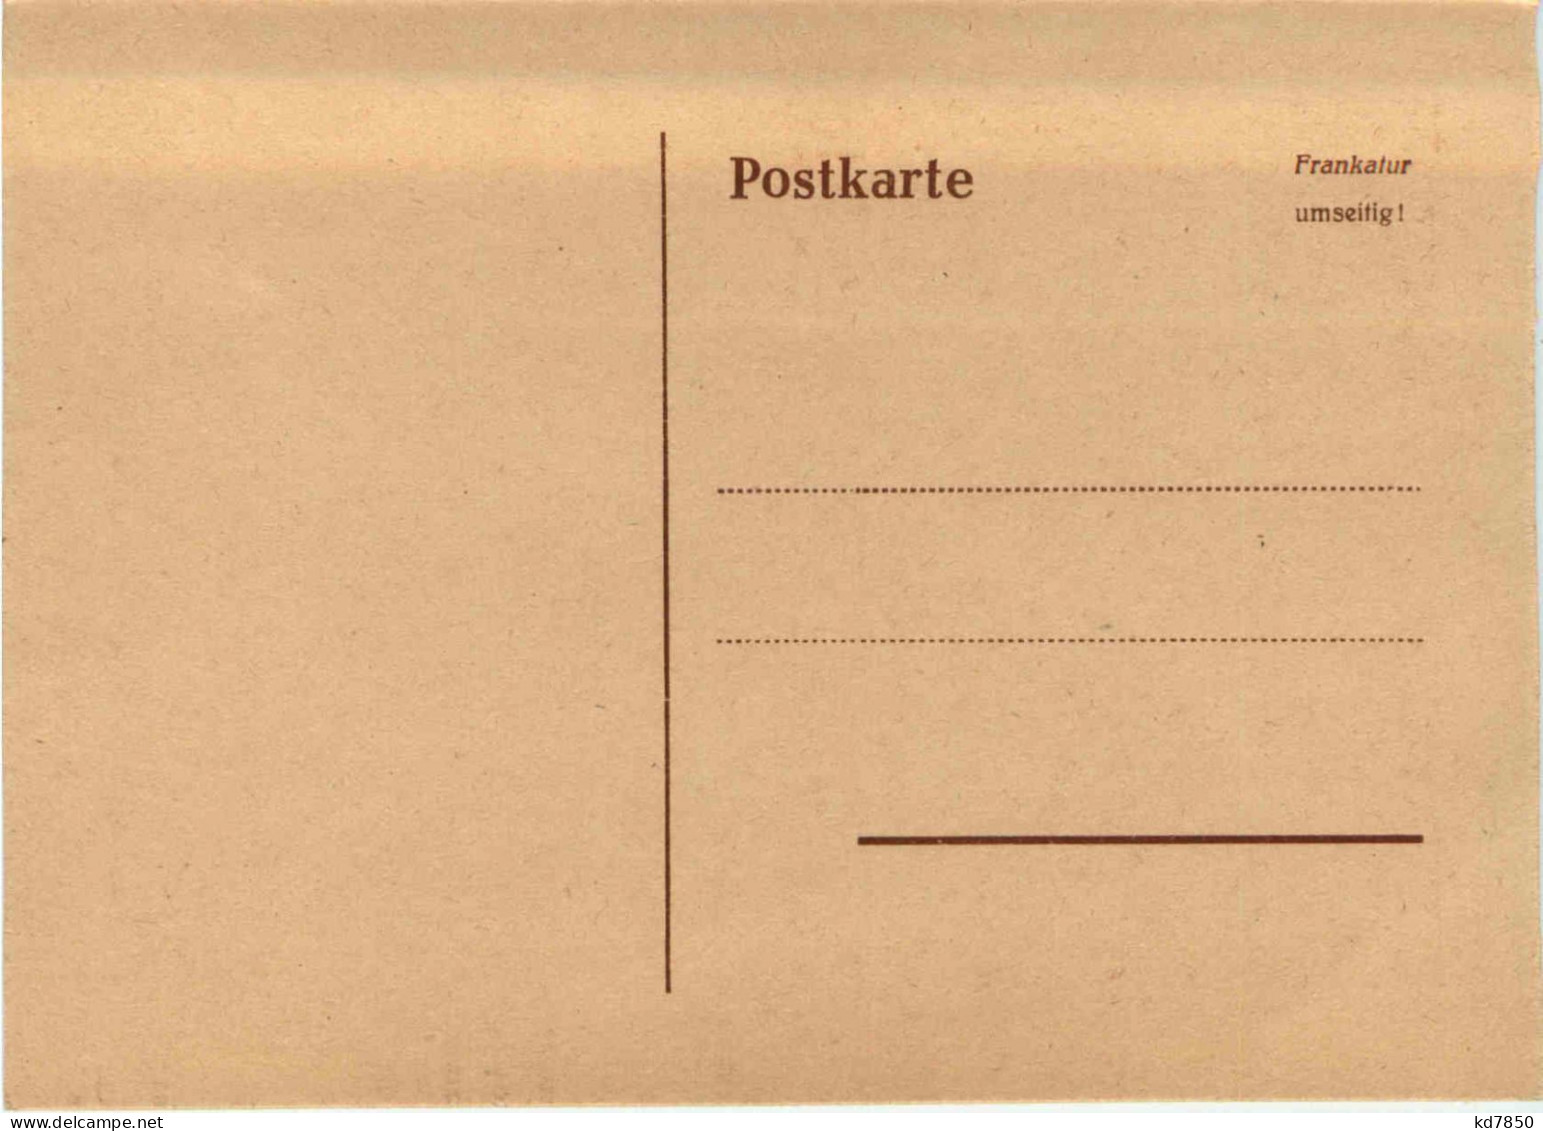 Tag Der Briefmarke 1951 - Saar - Briefmarken (Abbildungen)